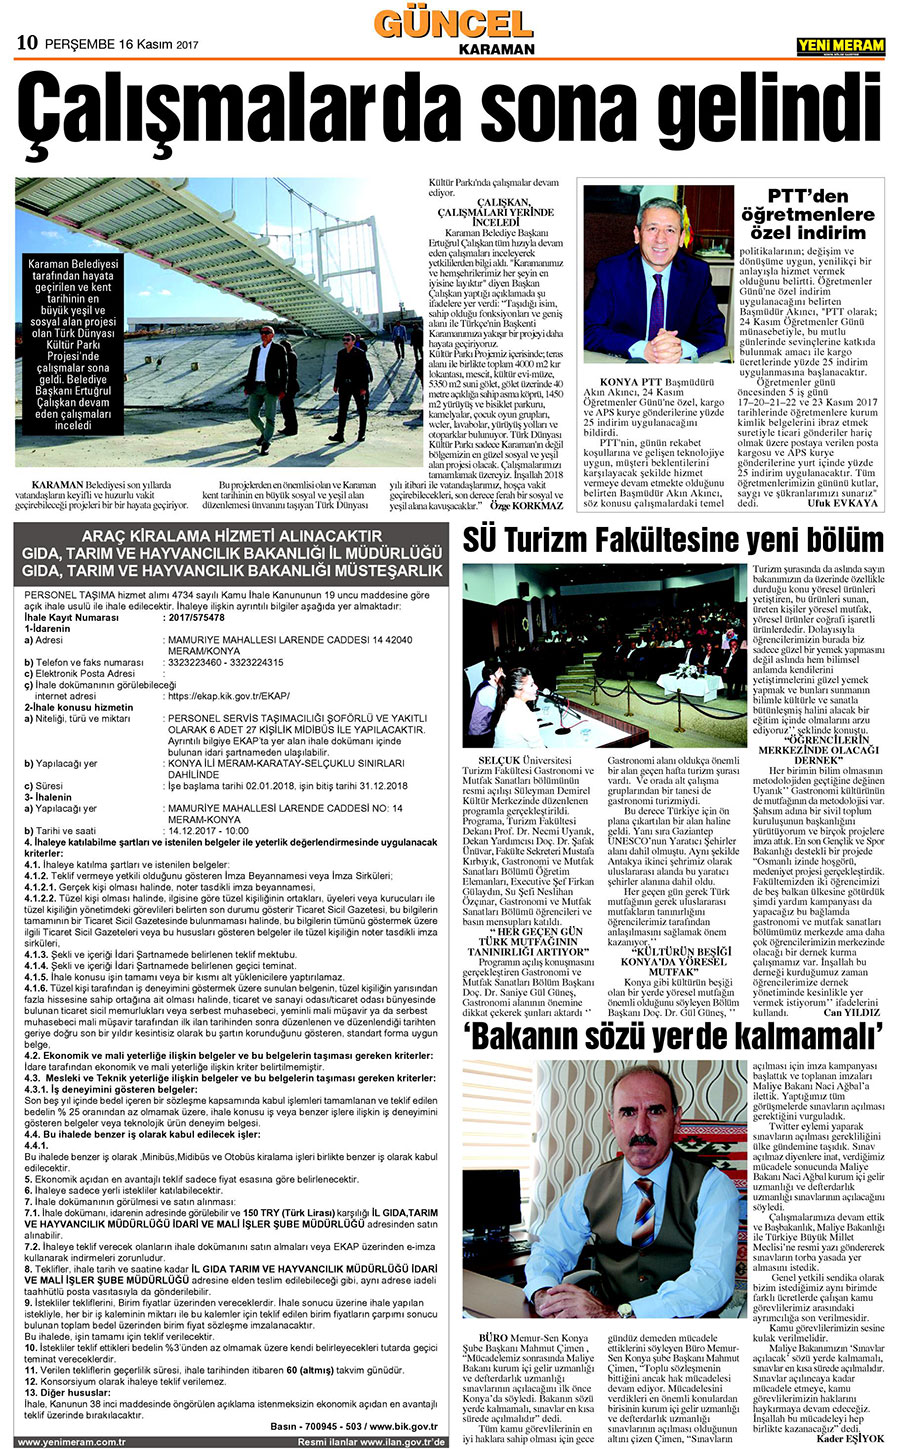 16 Kasım 2017 Yeni Meram Gazetesi